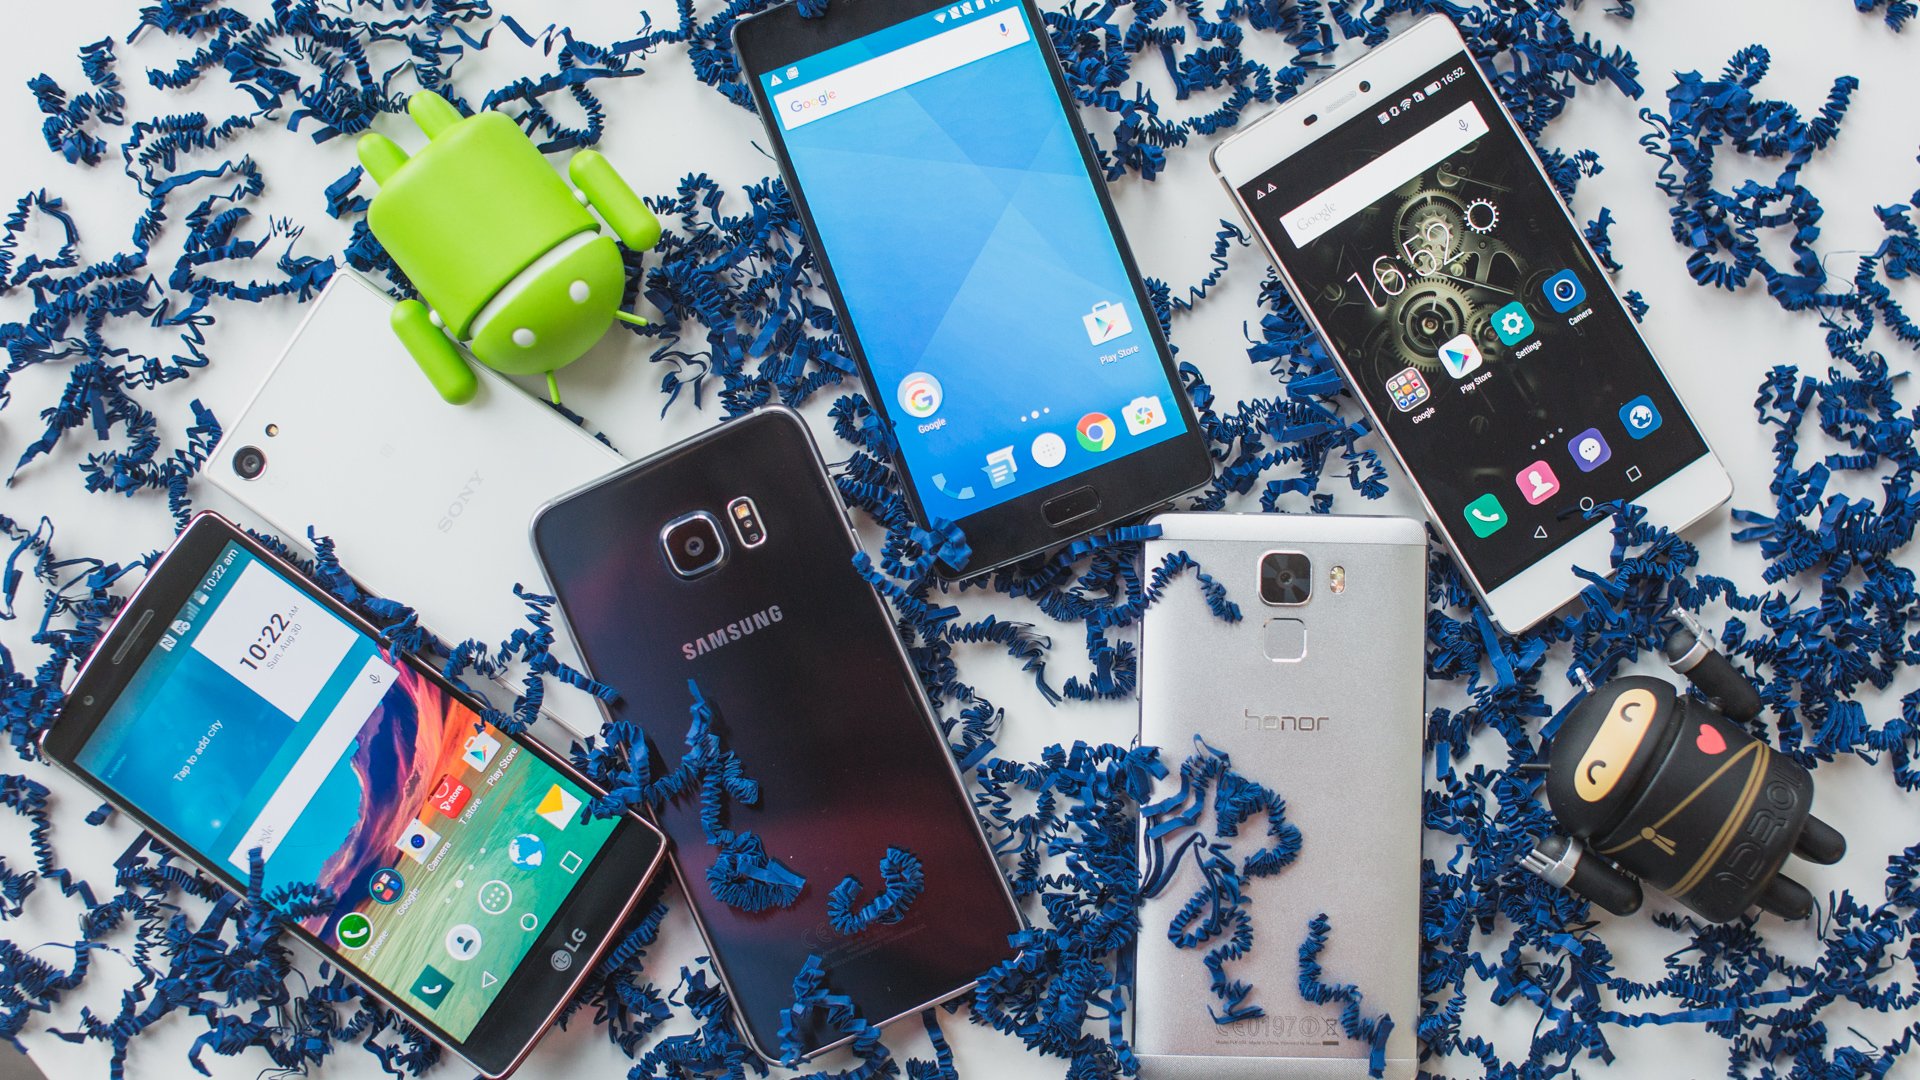 Kas kavatsete oma Androidi haldamiseks kasutada Carnivalit? Milliseid näpunäiteid annate kõige rämedamatele?